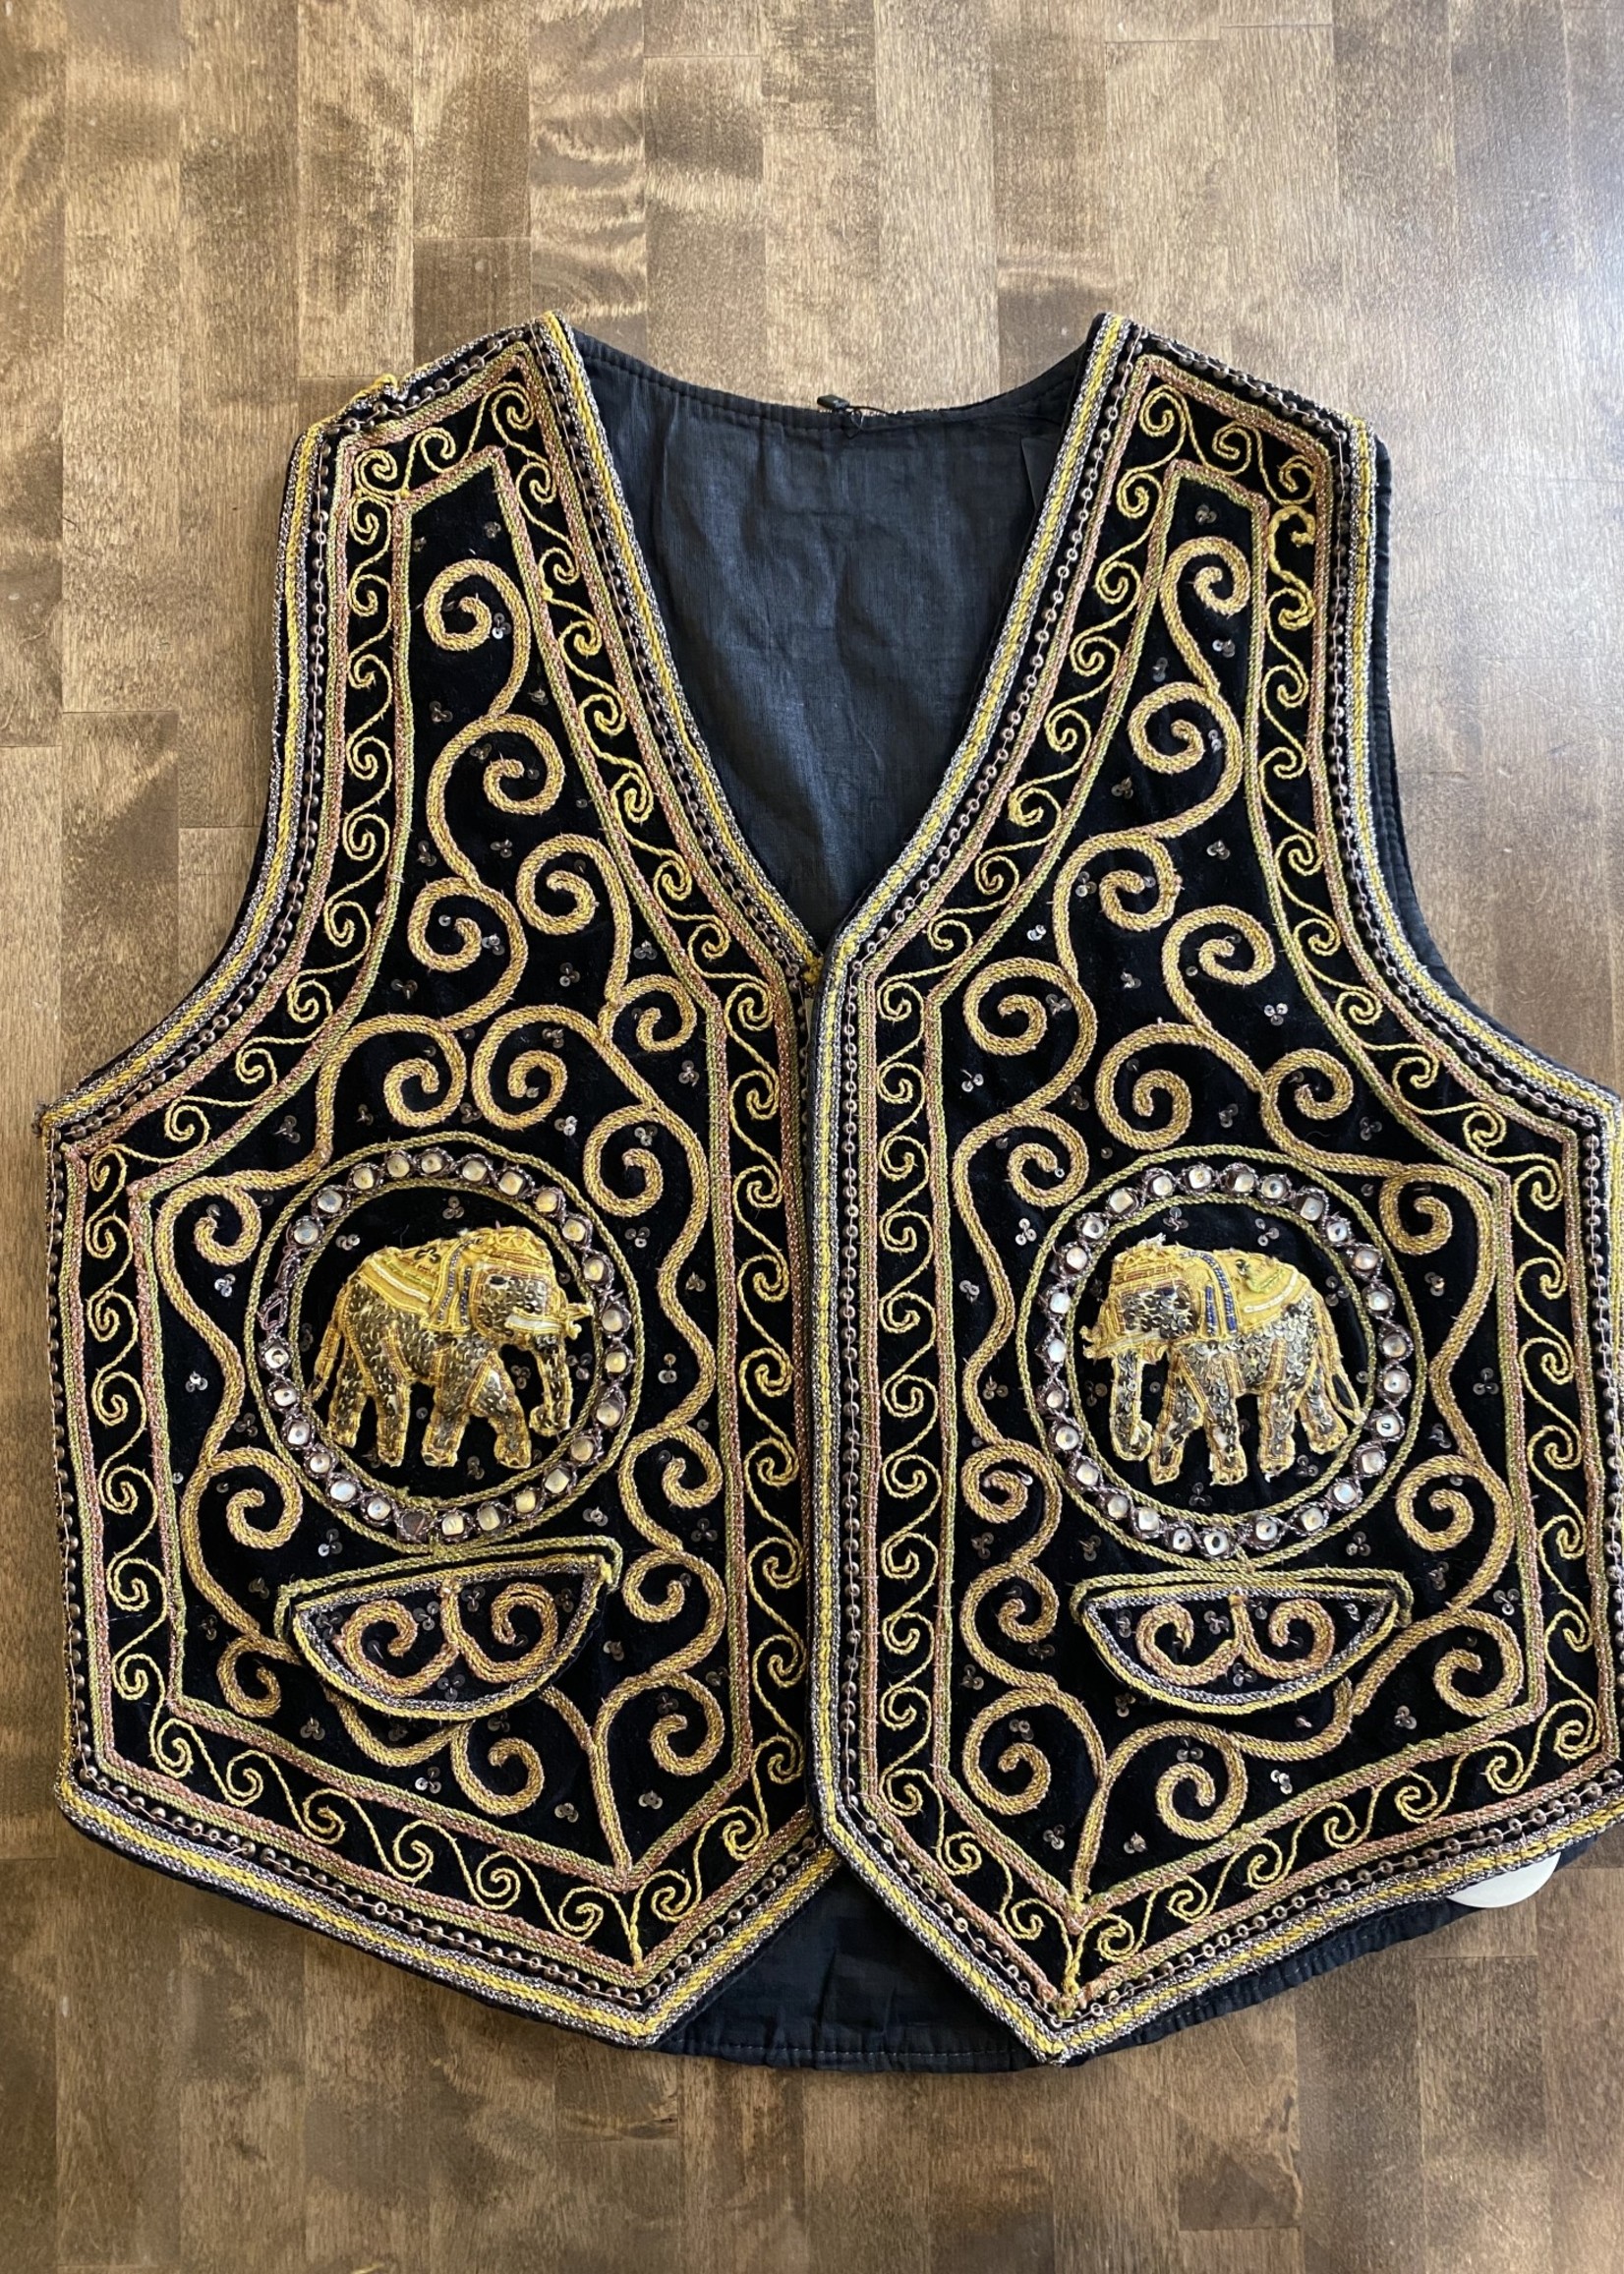 Vintage No Label Gold Embellished Elephant Vest L